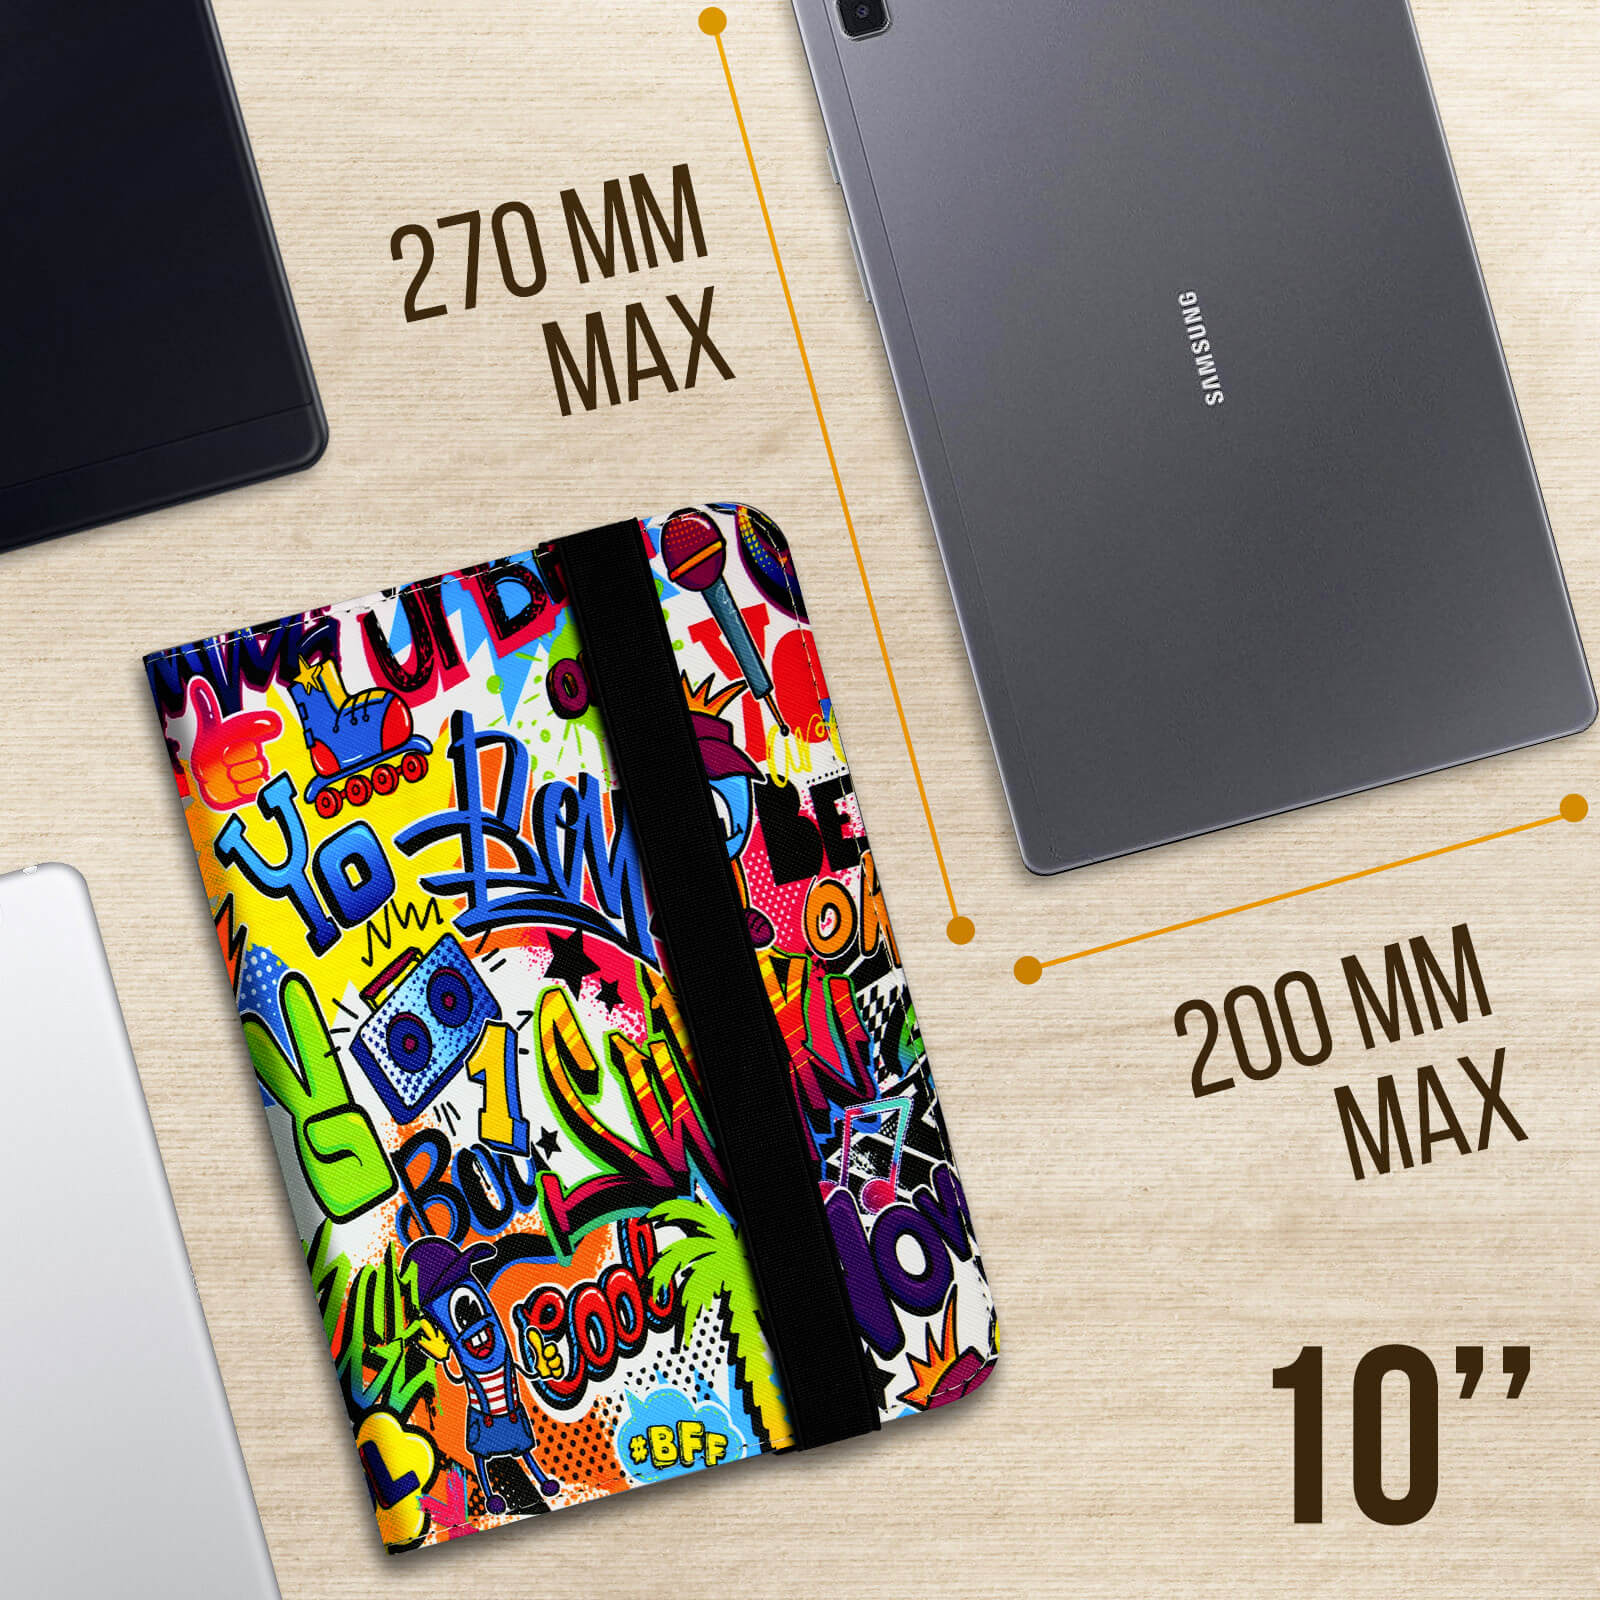 Housse Etui Tablette Galaxy Tab Universelle - 10 Pouces - Motif MM'S  3567045016870